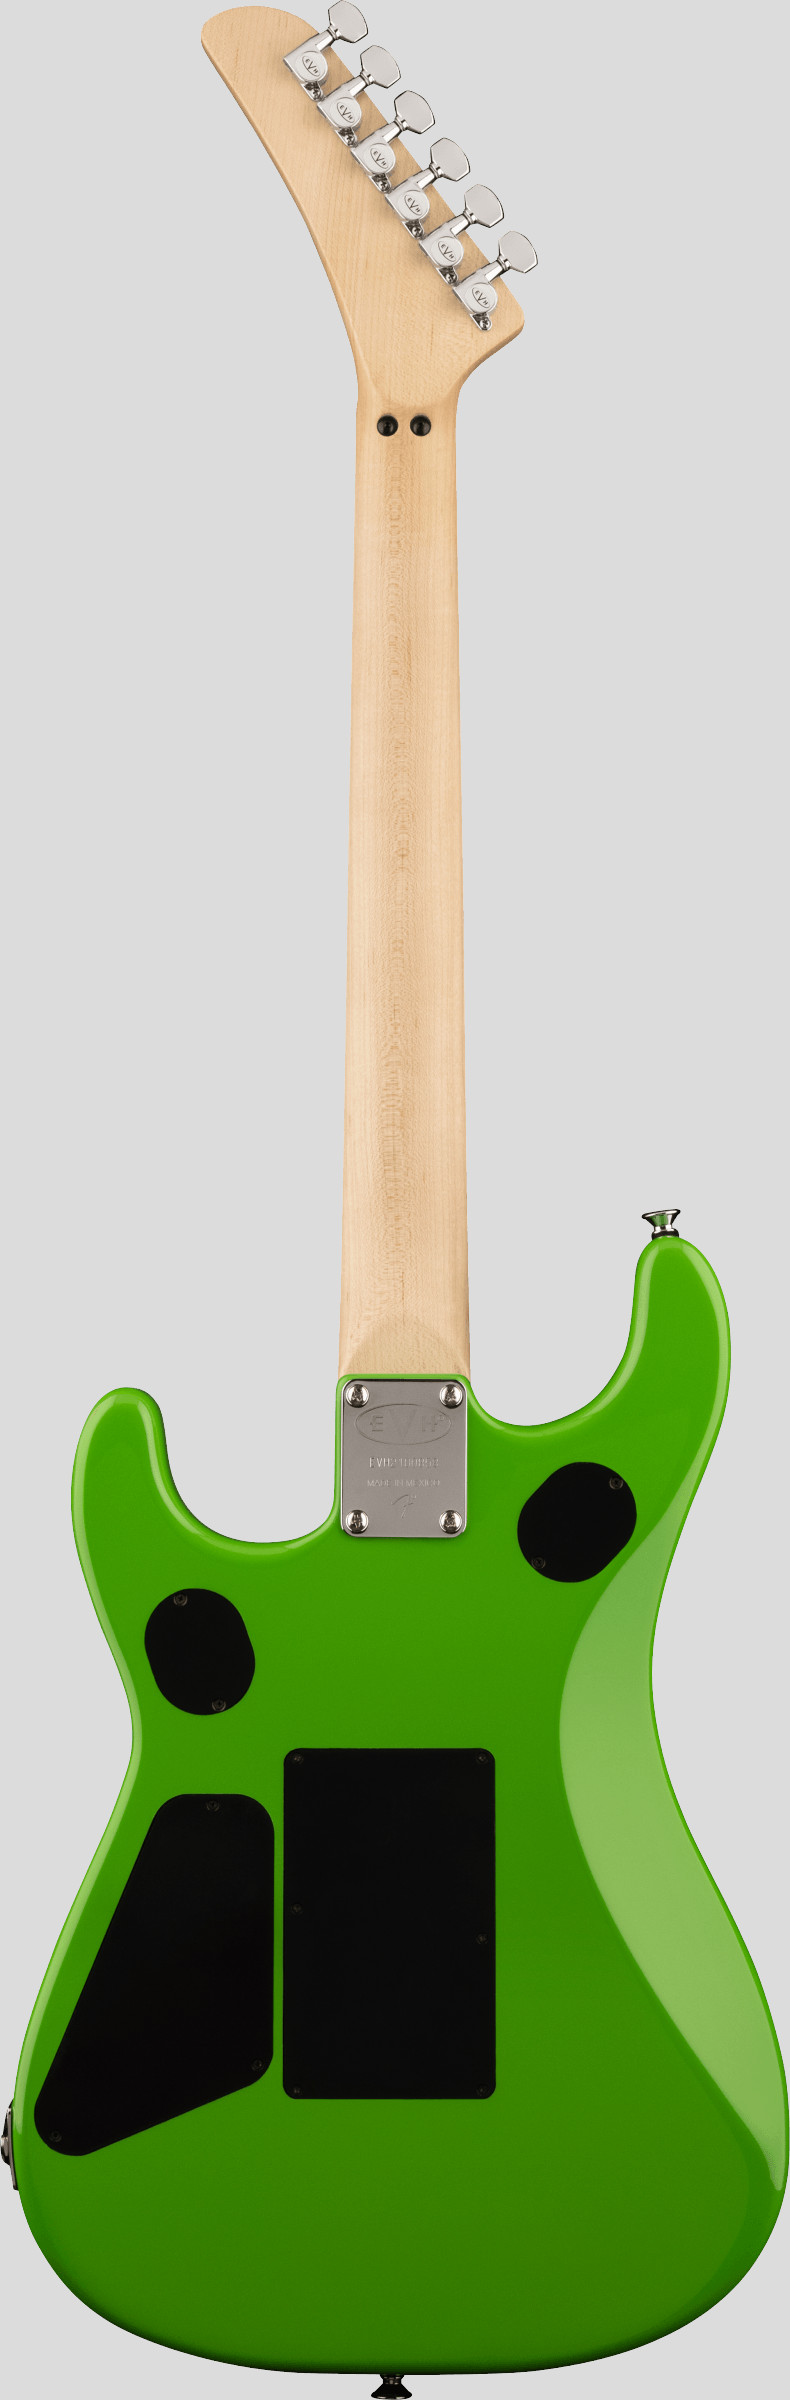 EVH 5150 Standard Maple Fingerboard Slime Green 2